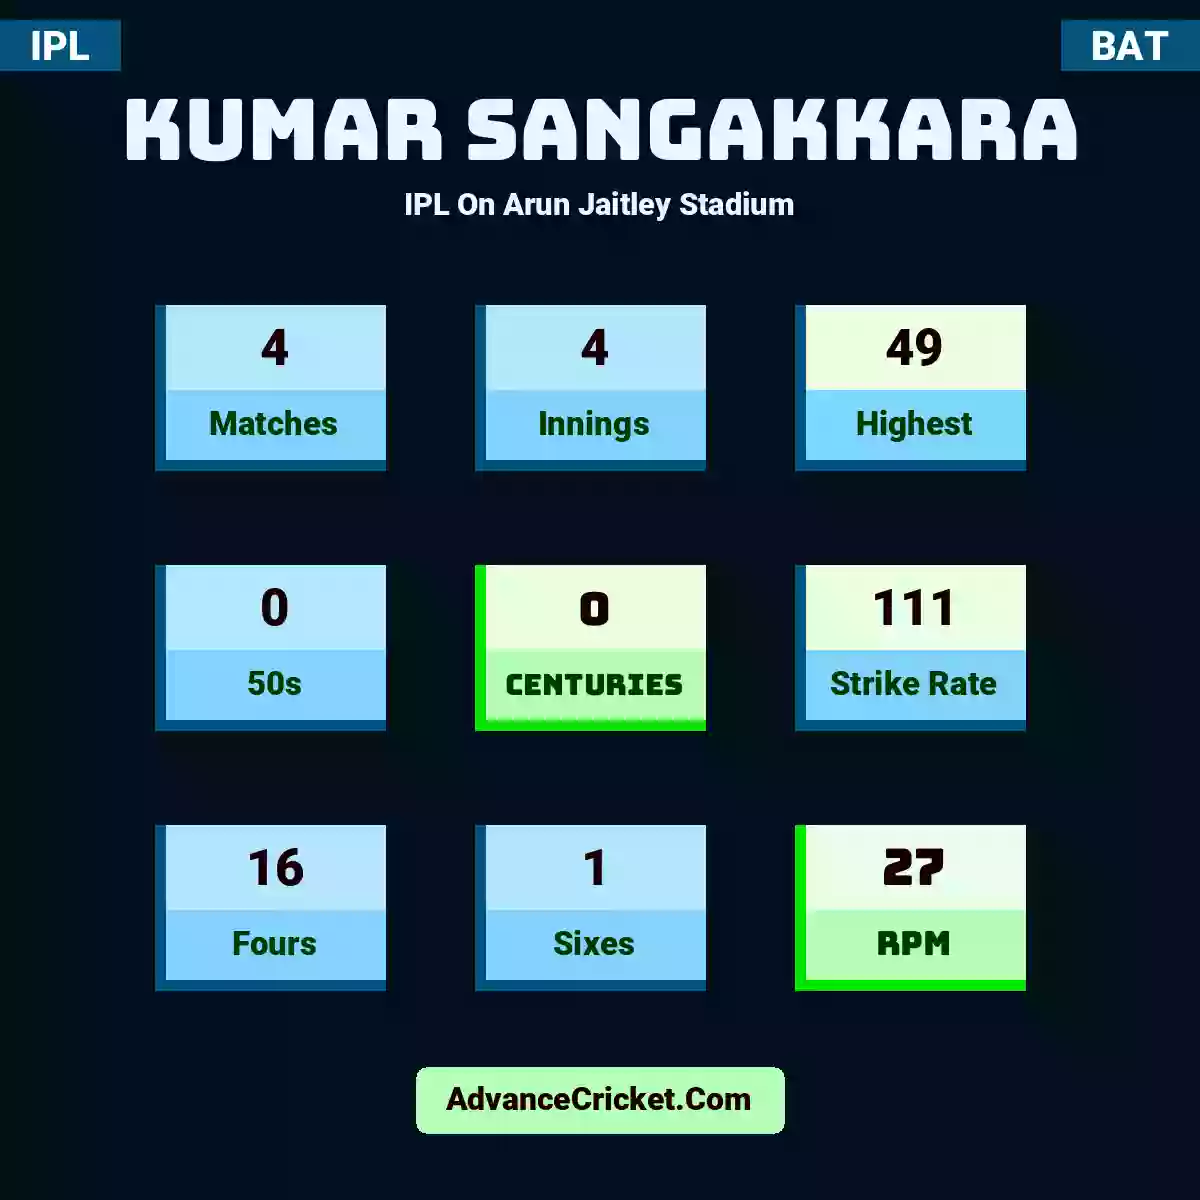 Kumar Sangakkara IPL  On Arun Jaitley Stadium, Kumar Sangakkara played 4 matches, scored 49 runs as highest, 0 half-centuries, and 0 centuries, with a strike rate of 111. K.Sangakkara hit 16 fours and 1 sixes, with an RPM of 27.